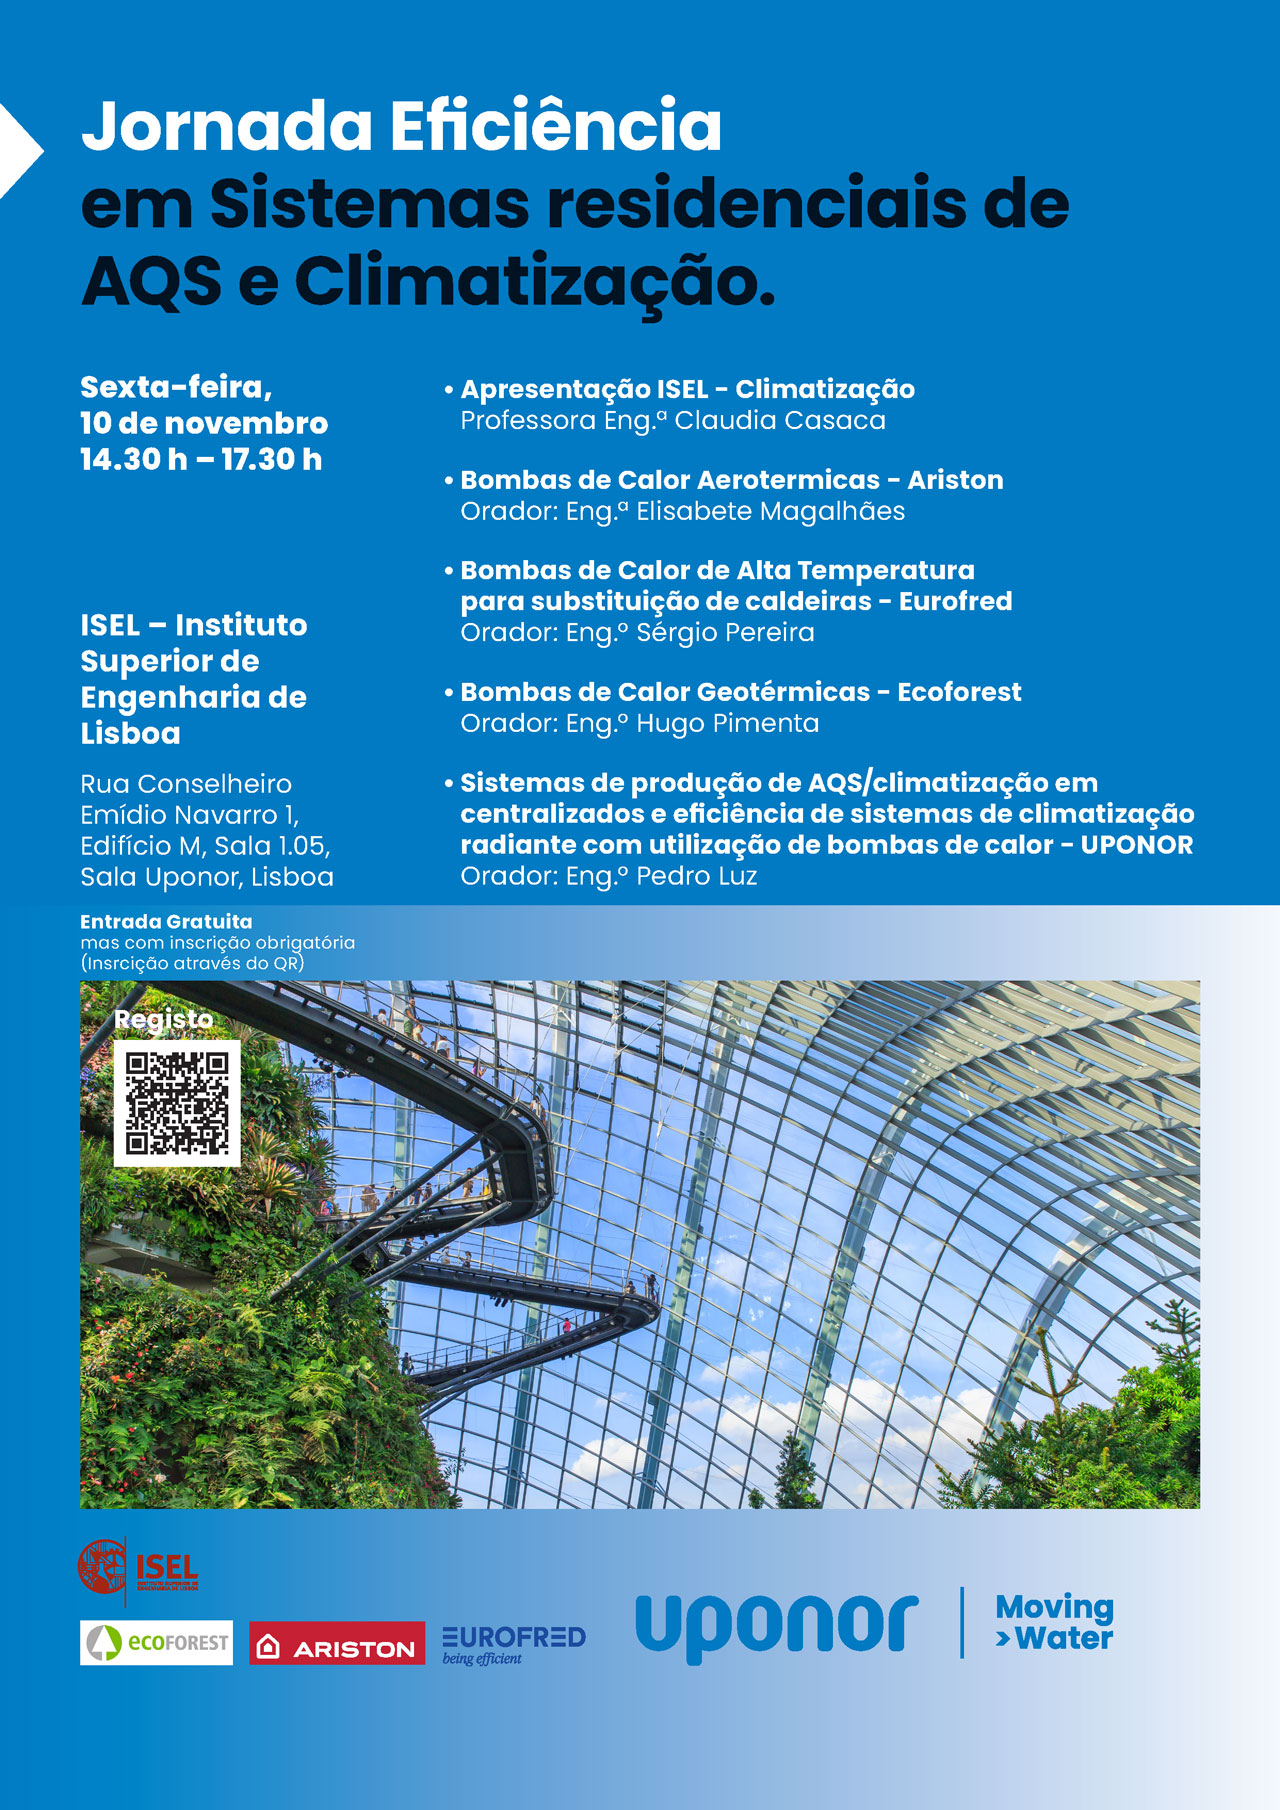 Seminário Jornada Eficiência em Sistemas residenciais de AQS e Climatização